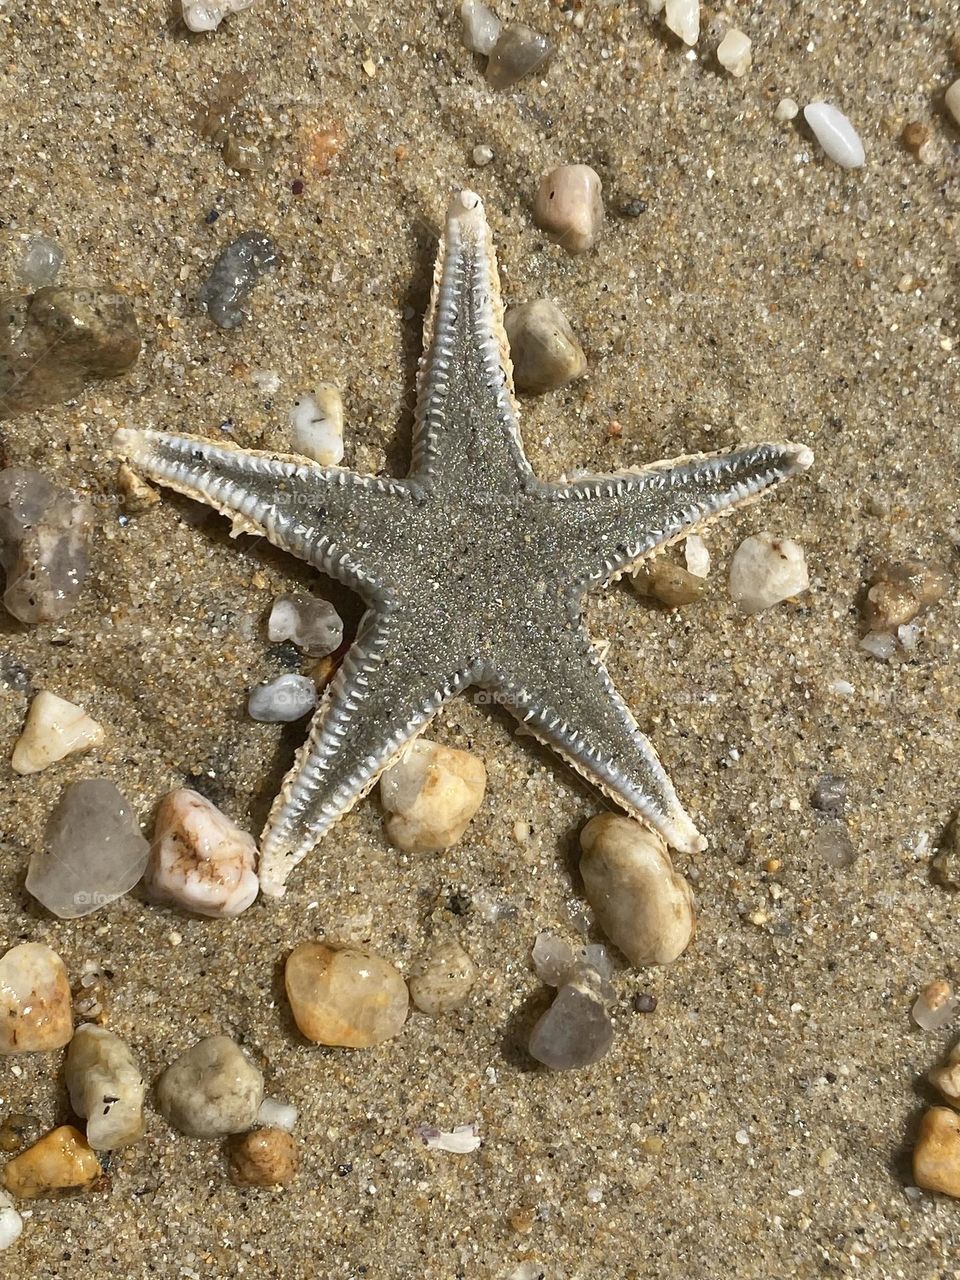 Starfish on the beach 